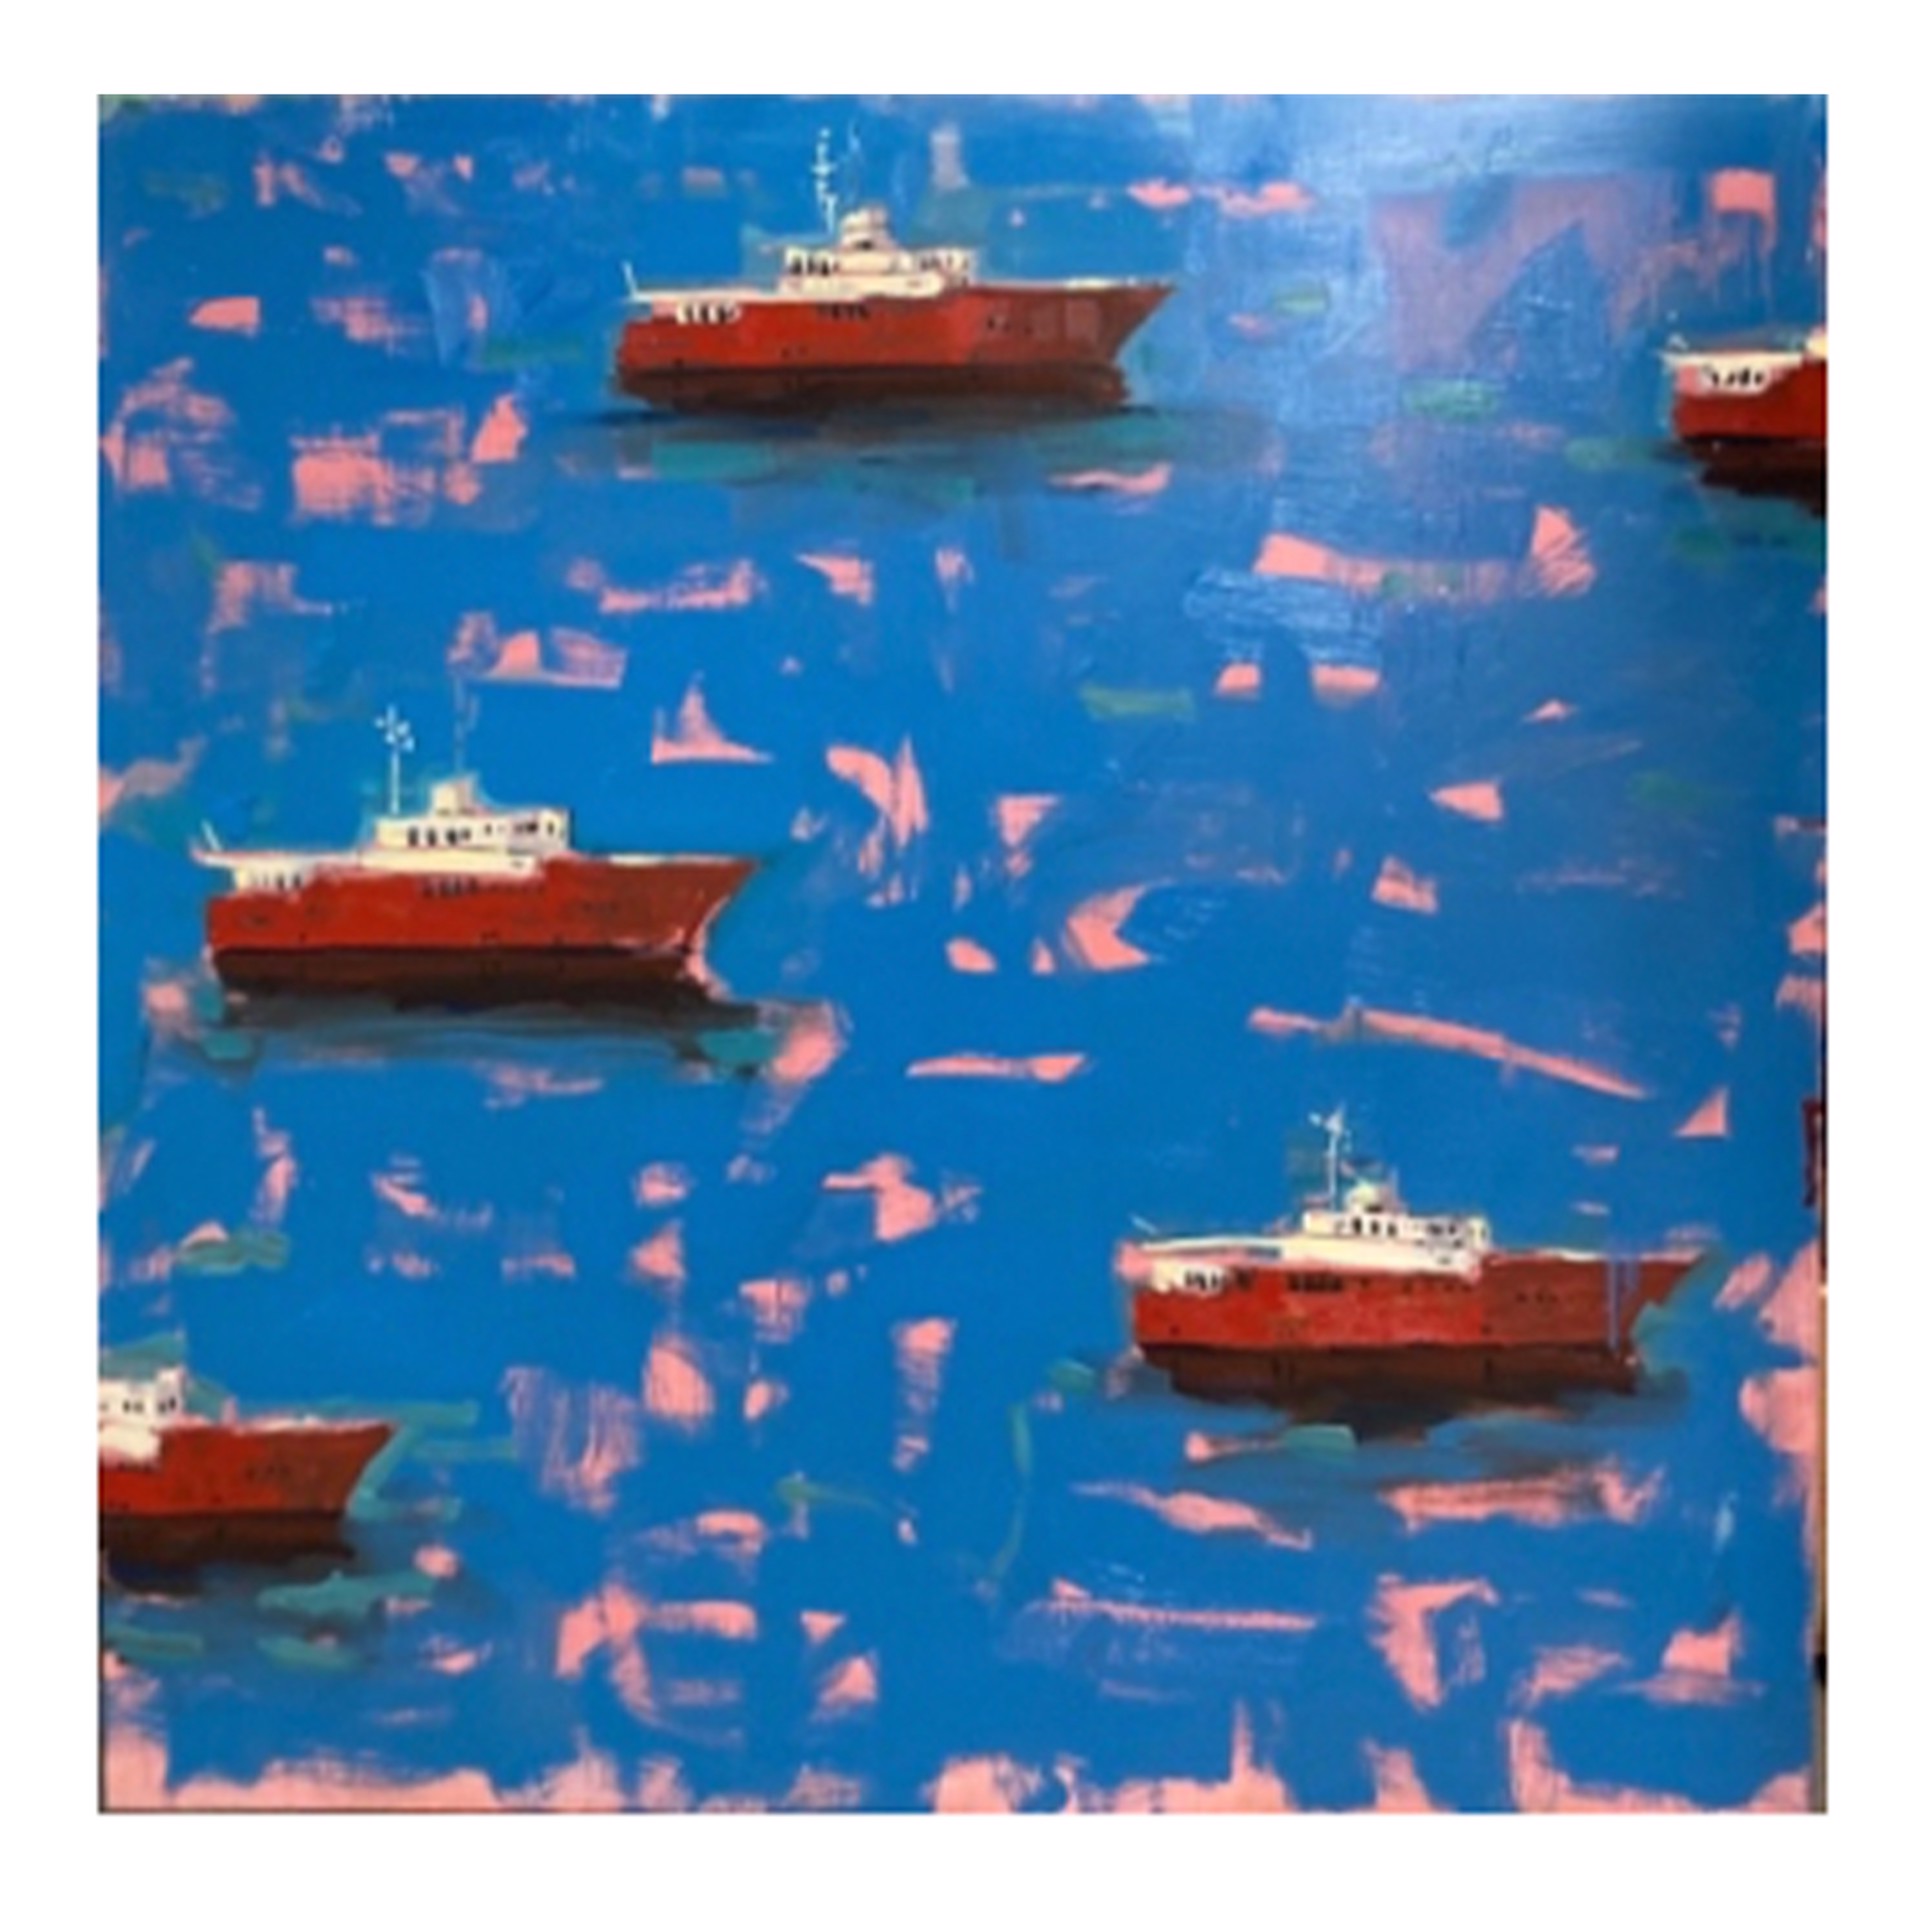 Ships on open sea by Dan Pelonis